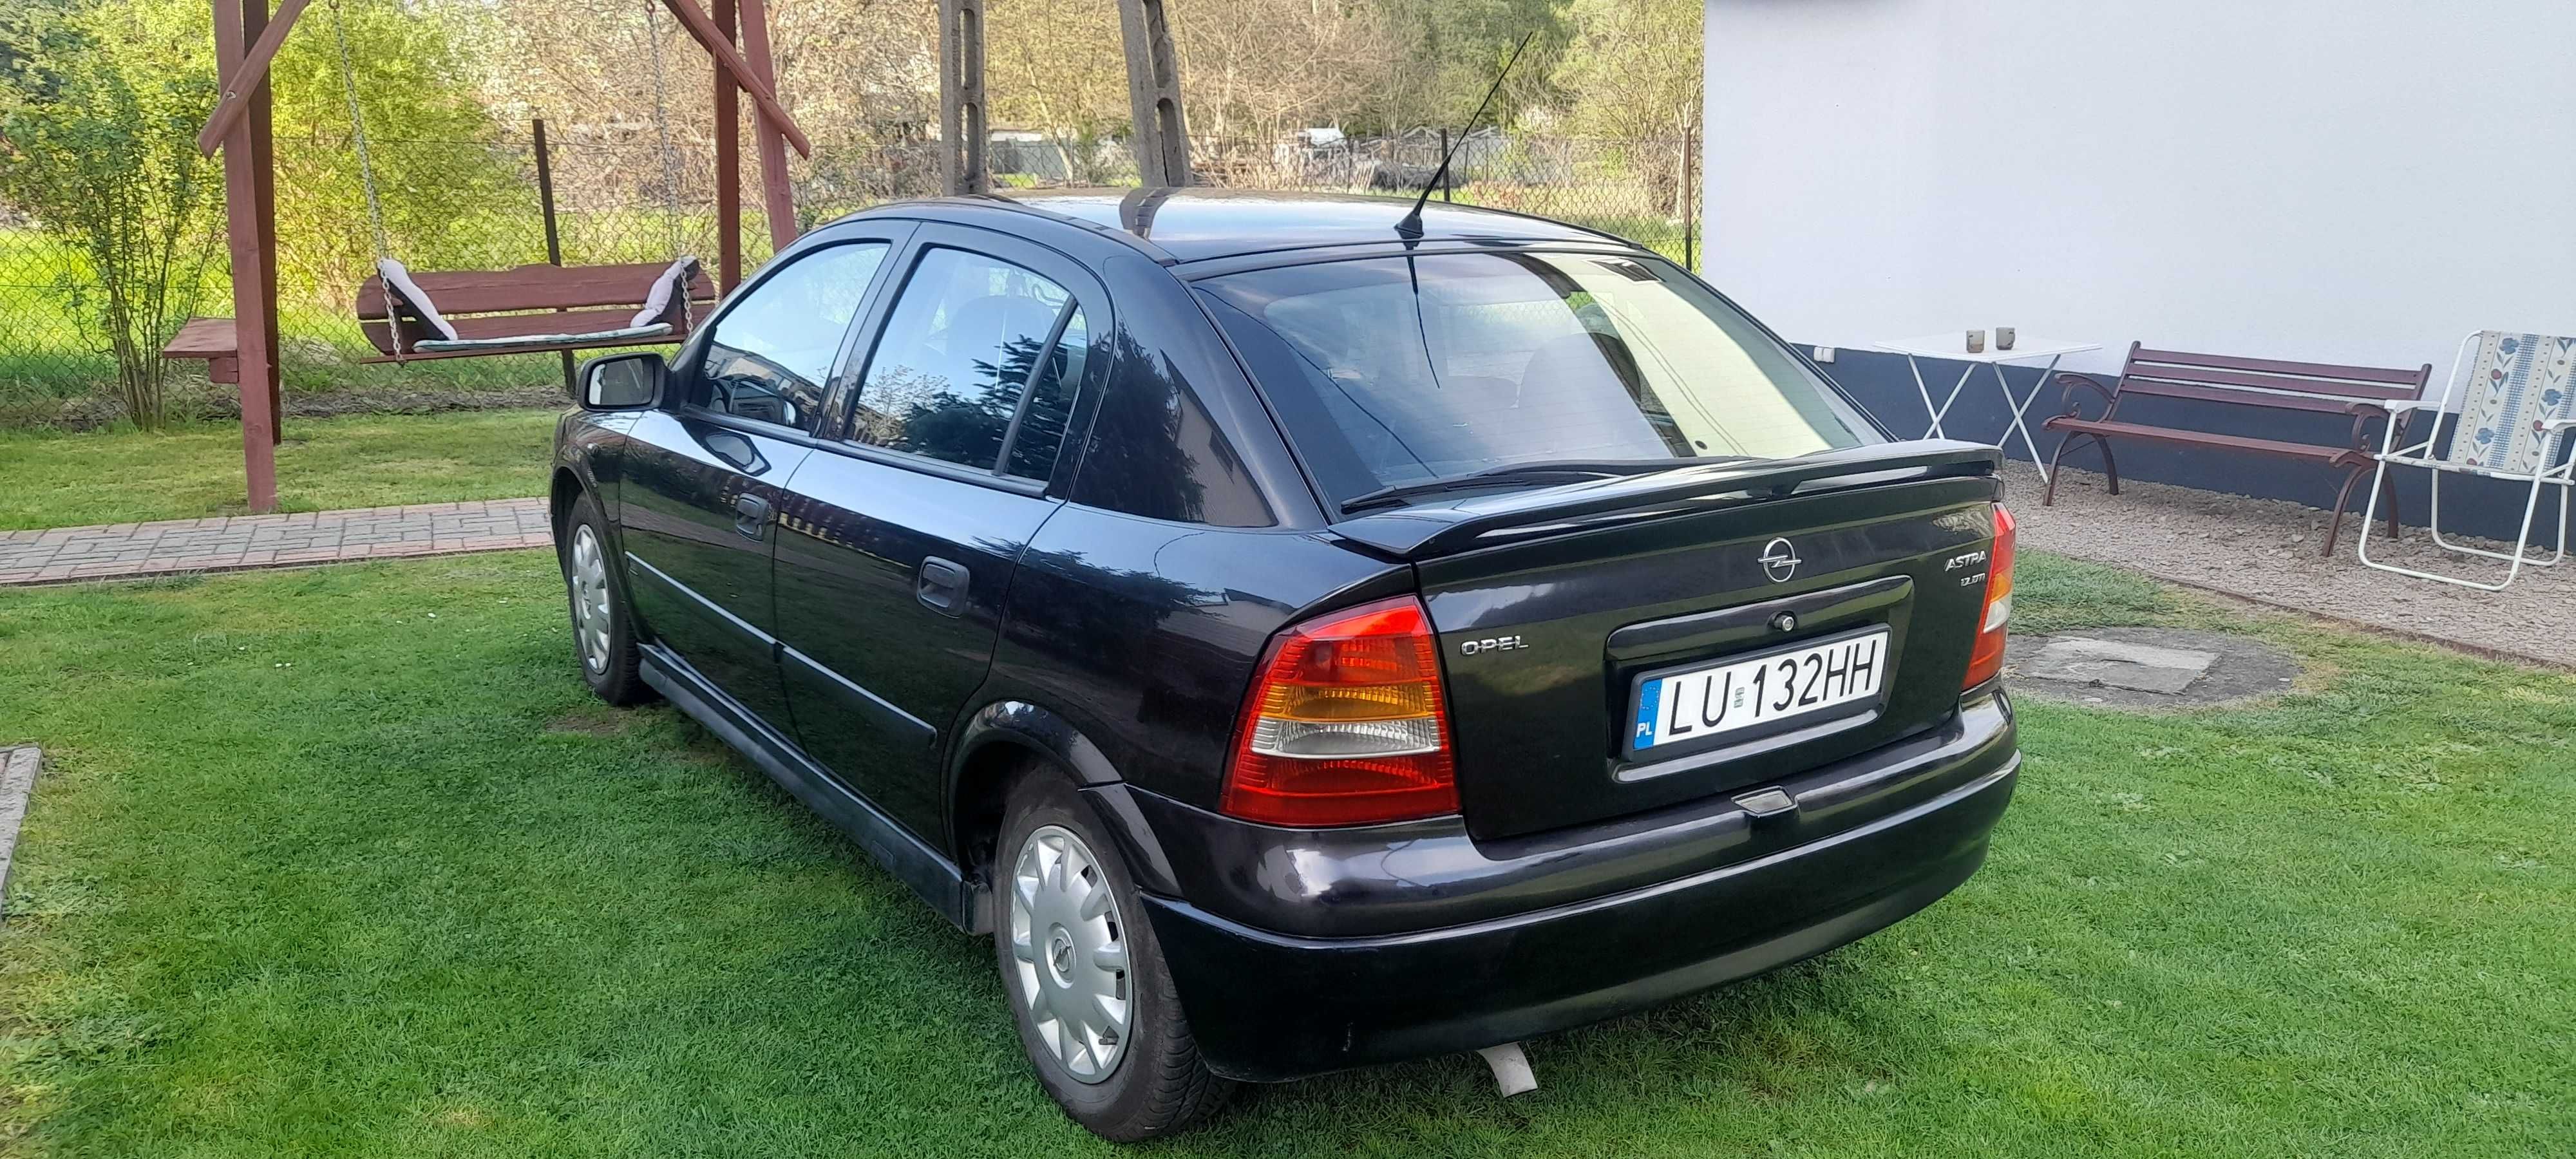 Opel Astra 1,7 diesel w bardzo dobrym stanie.